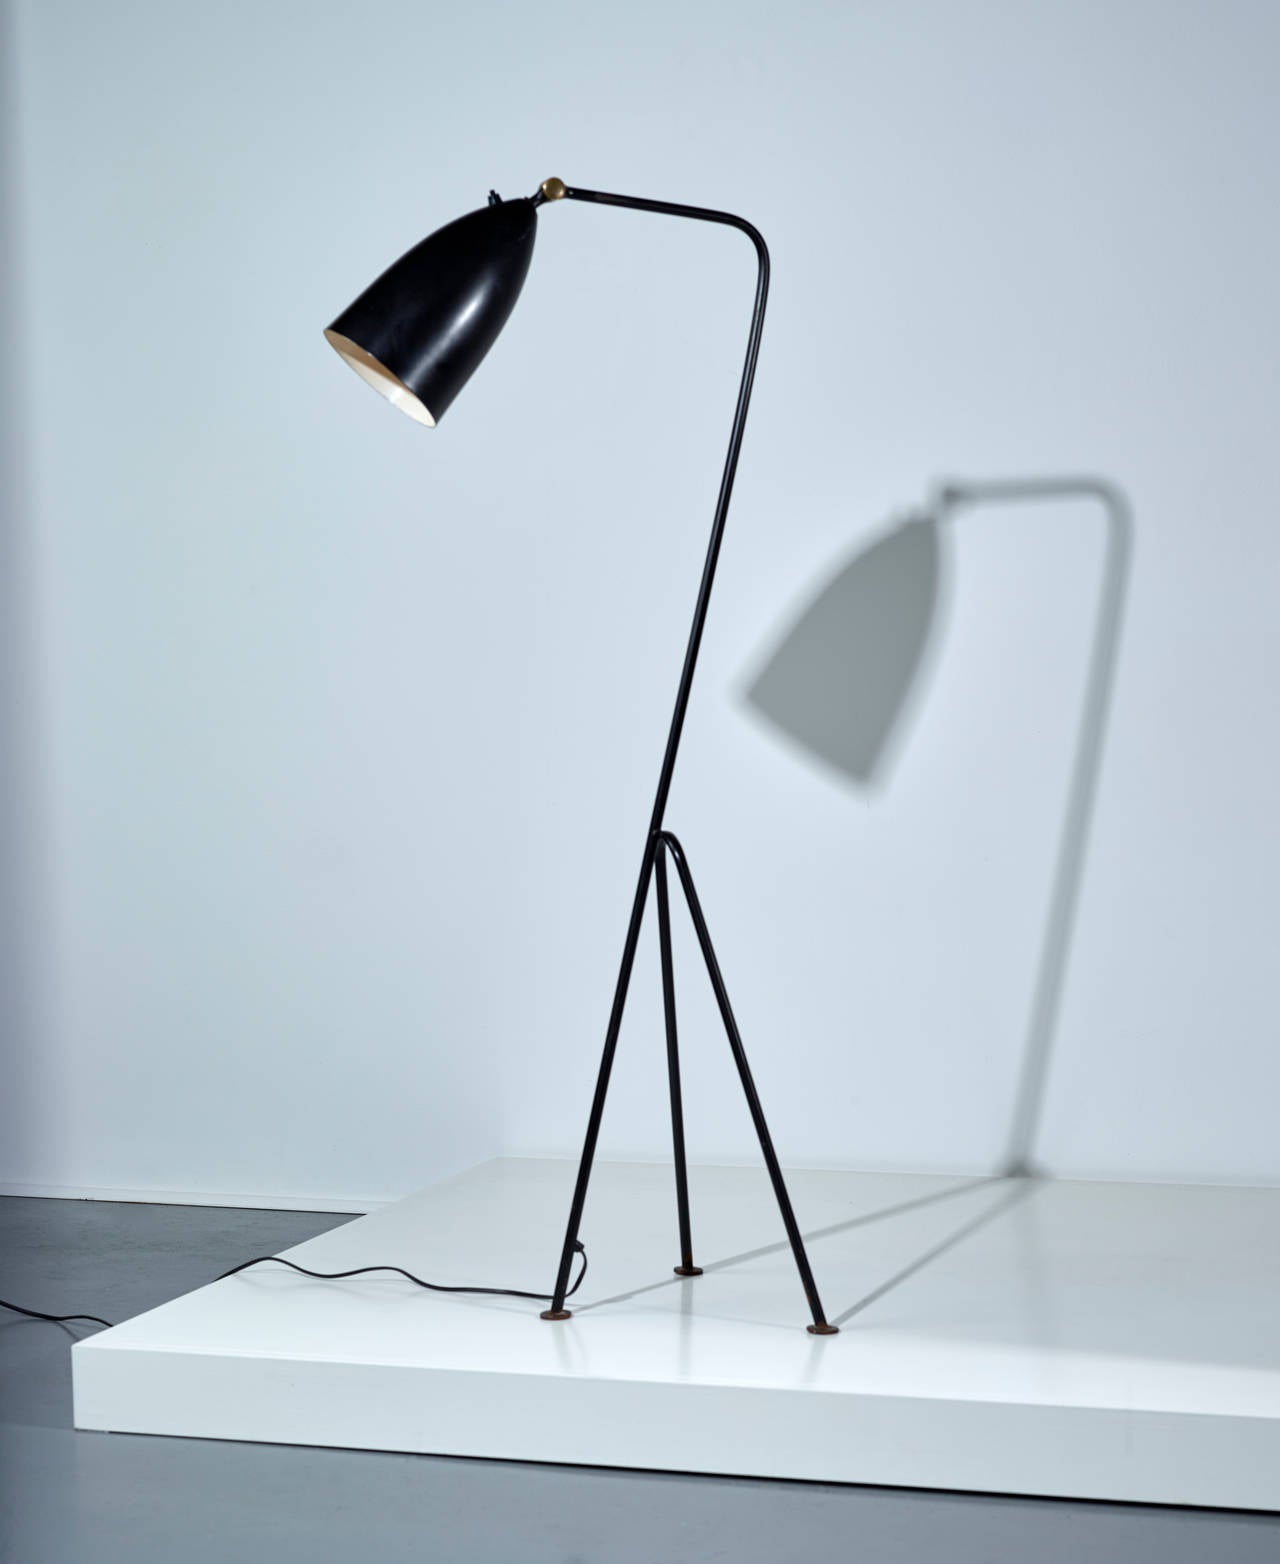 Greta Magnusson-Grossmann.

Floor lamp model G-33, 